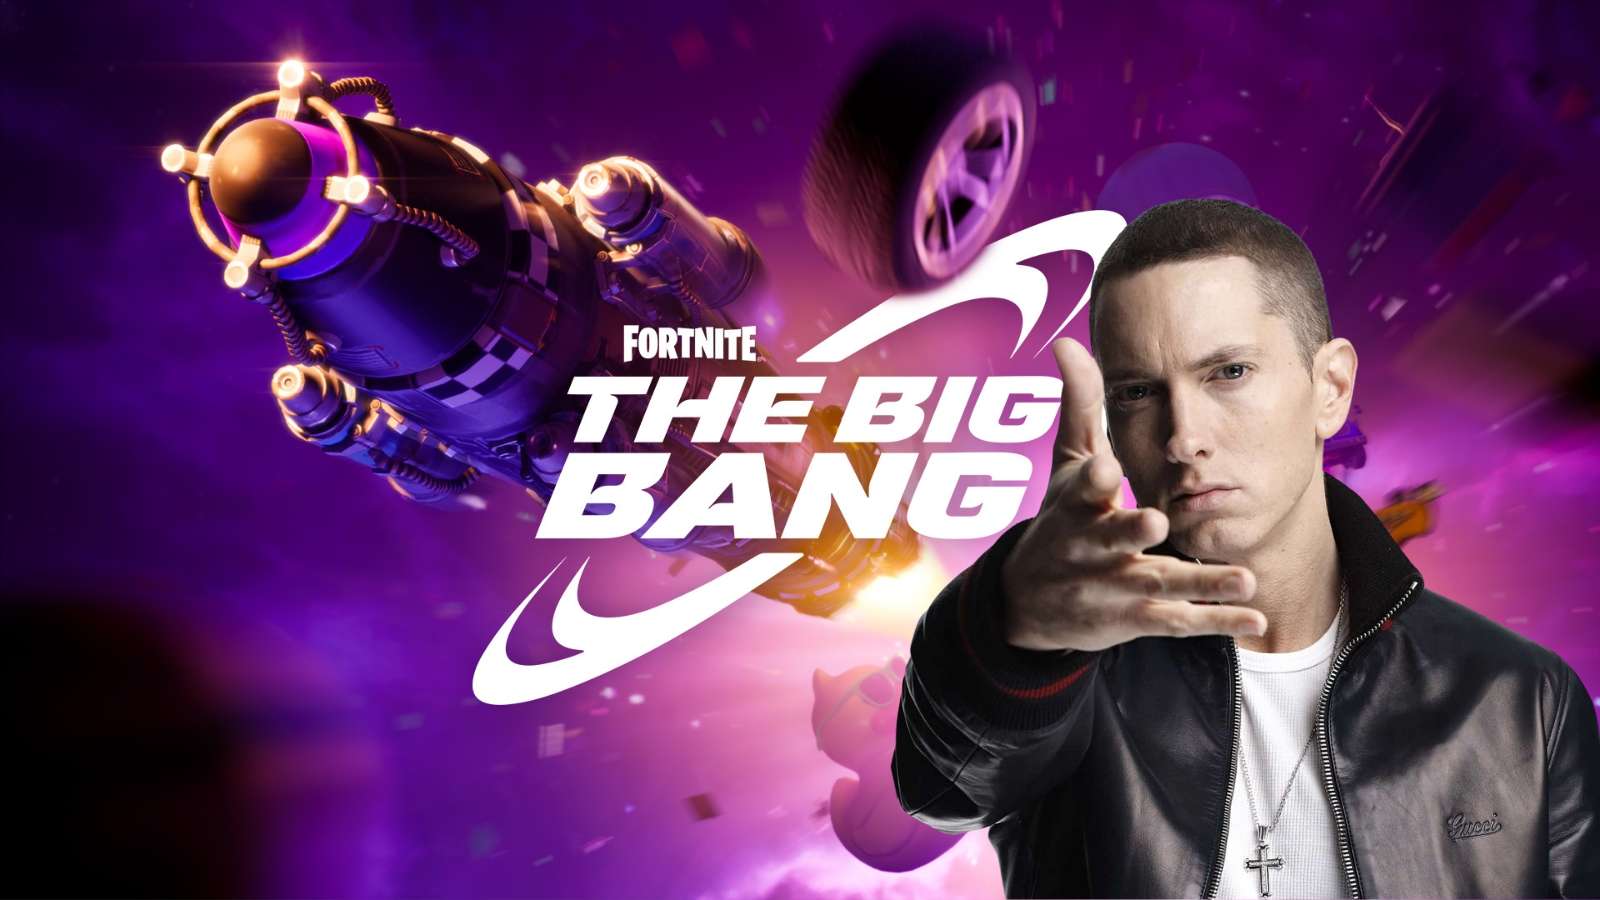 Eminem x Big Bang Fortnite Live Event